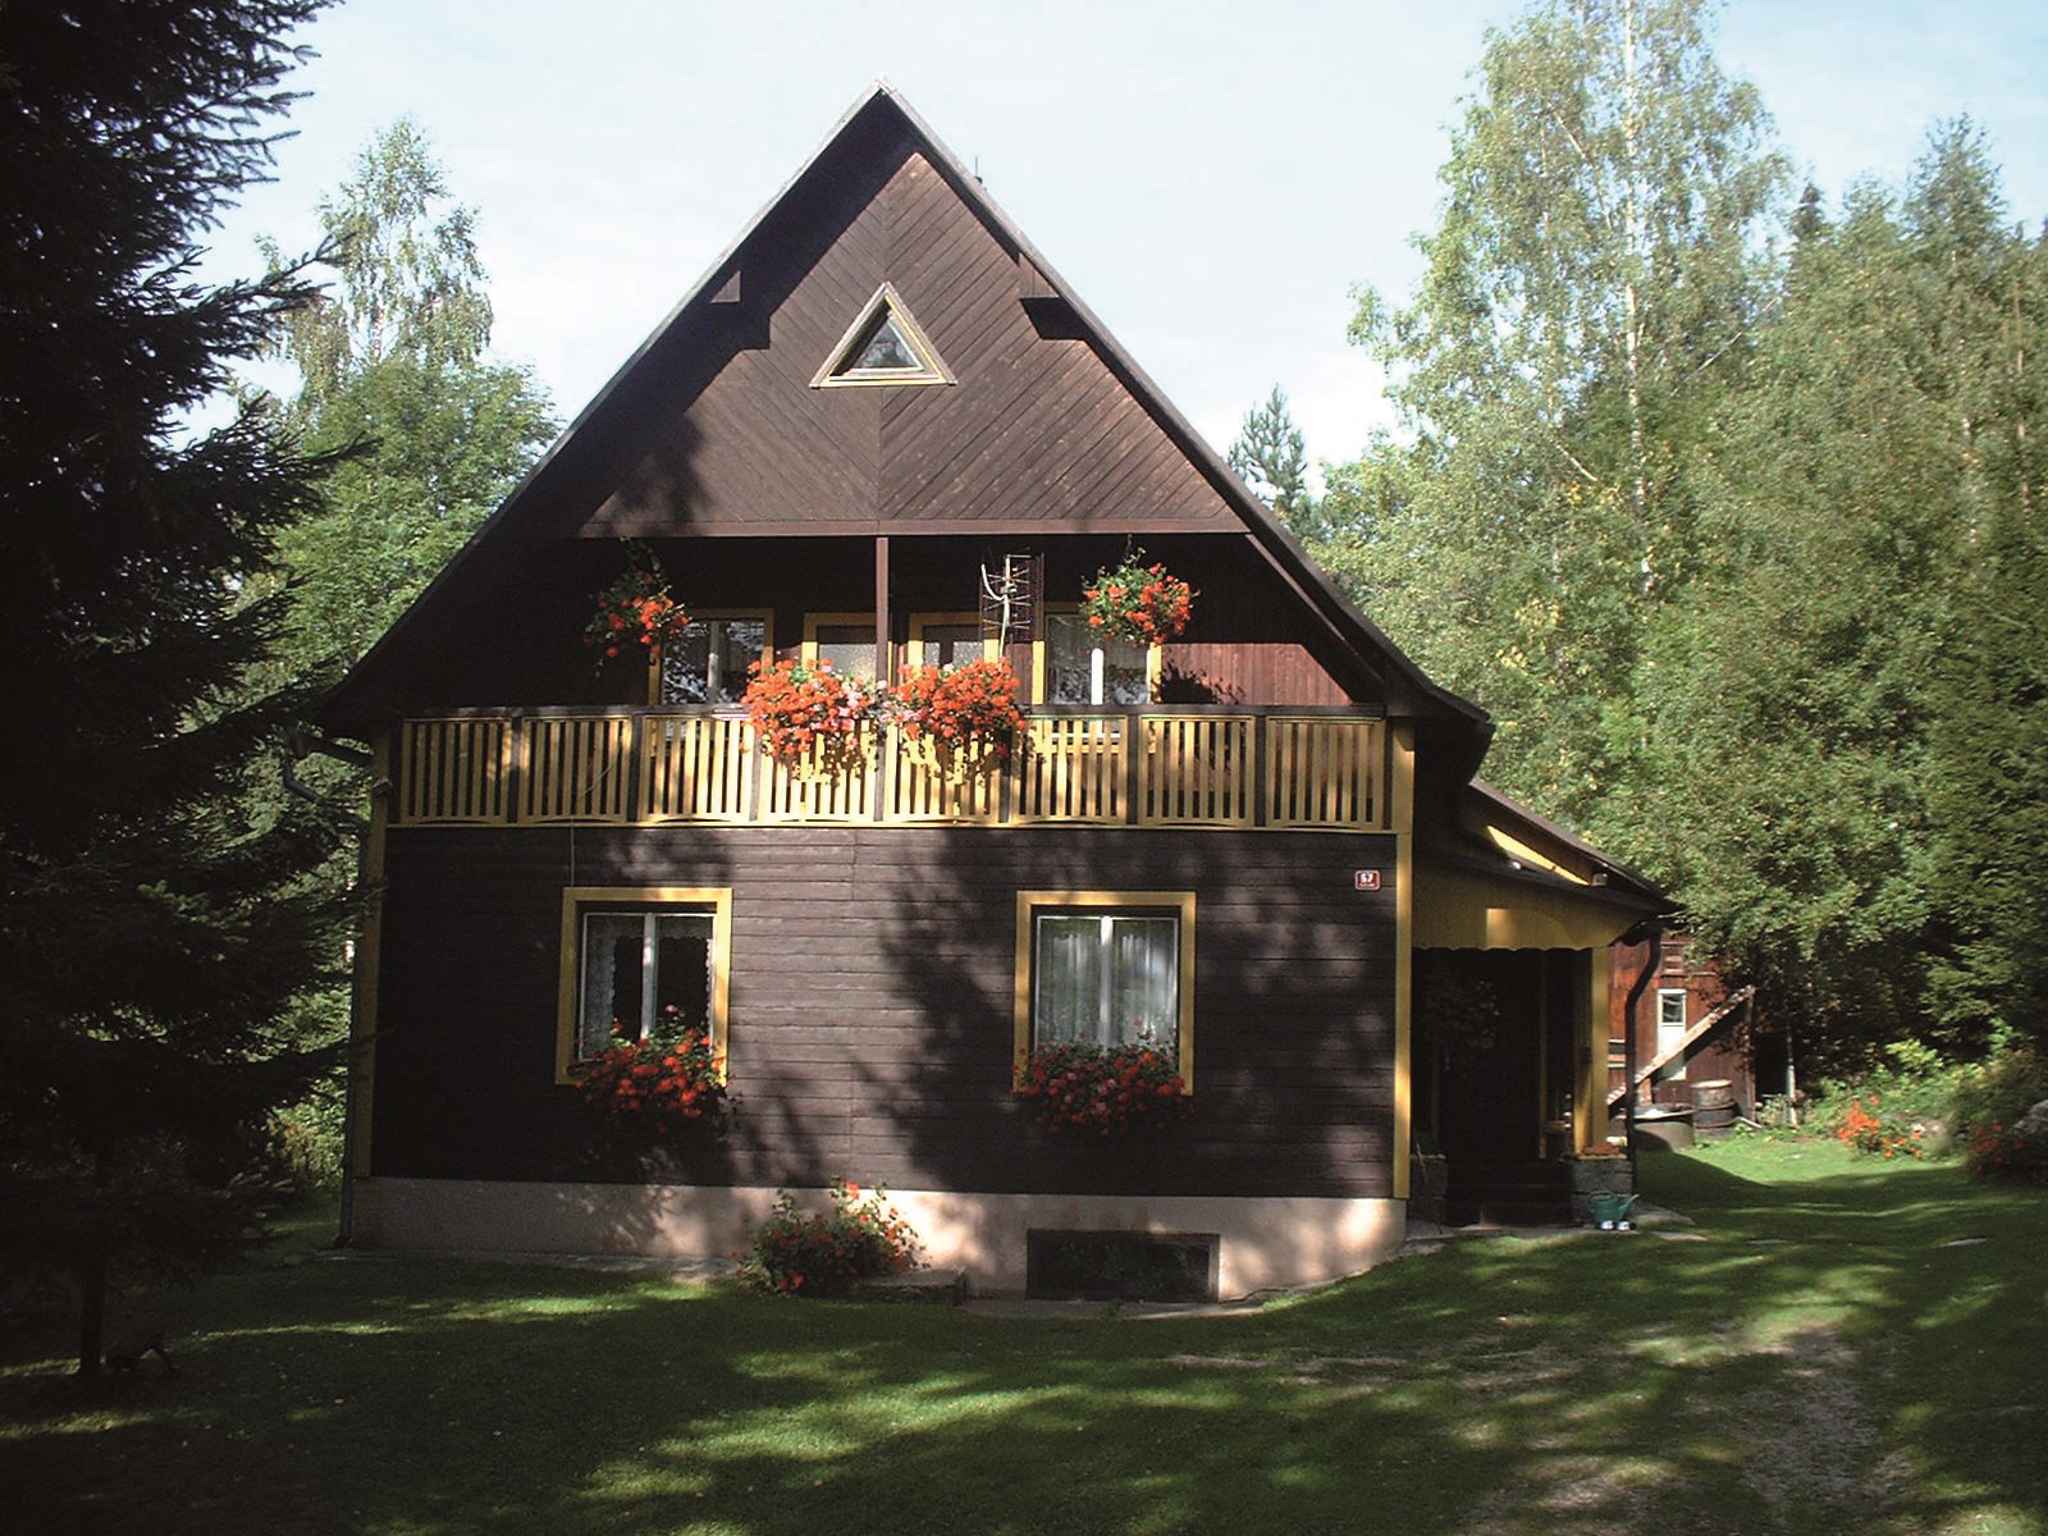 Ferienhaus mit Kaminofen in ruhiger Umgebung Ferienhaus  Riesengebirge CZ